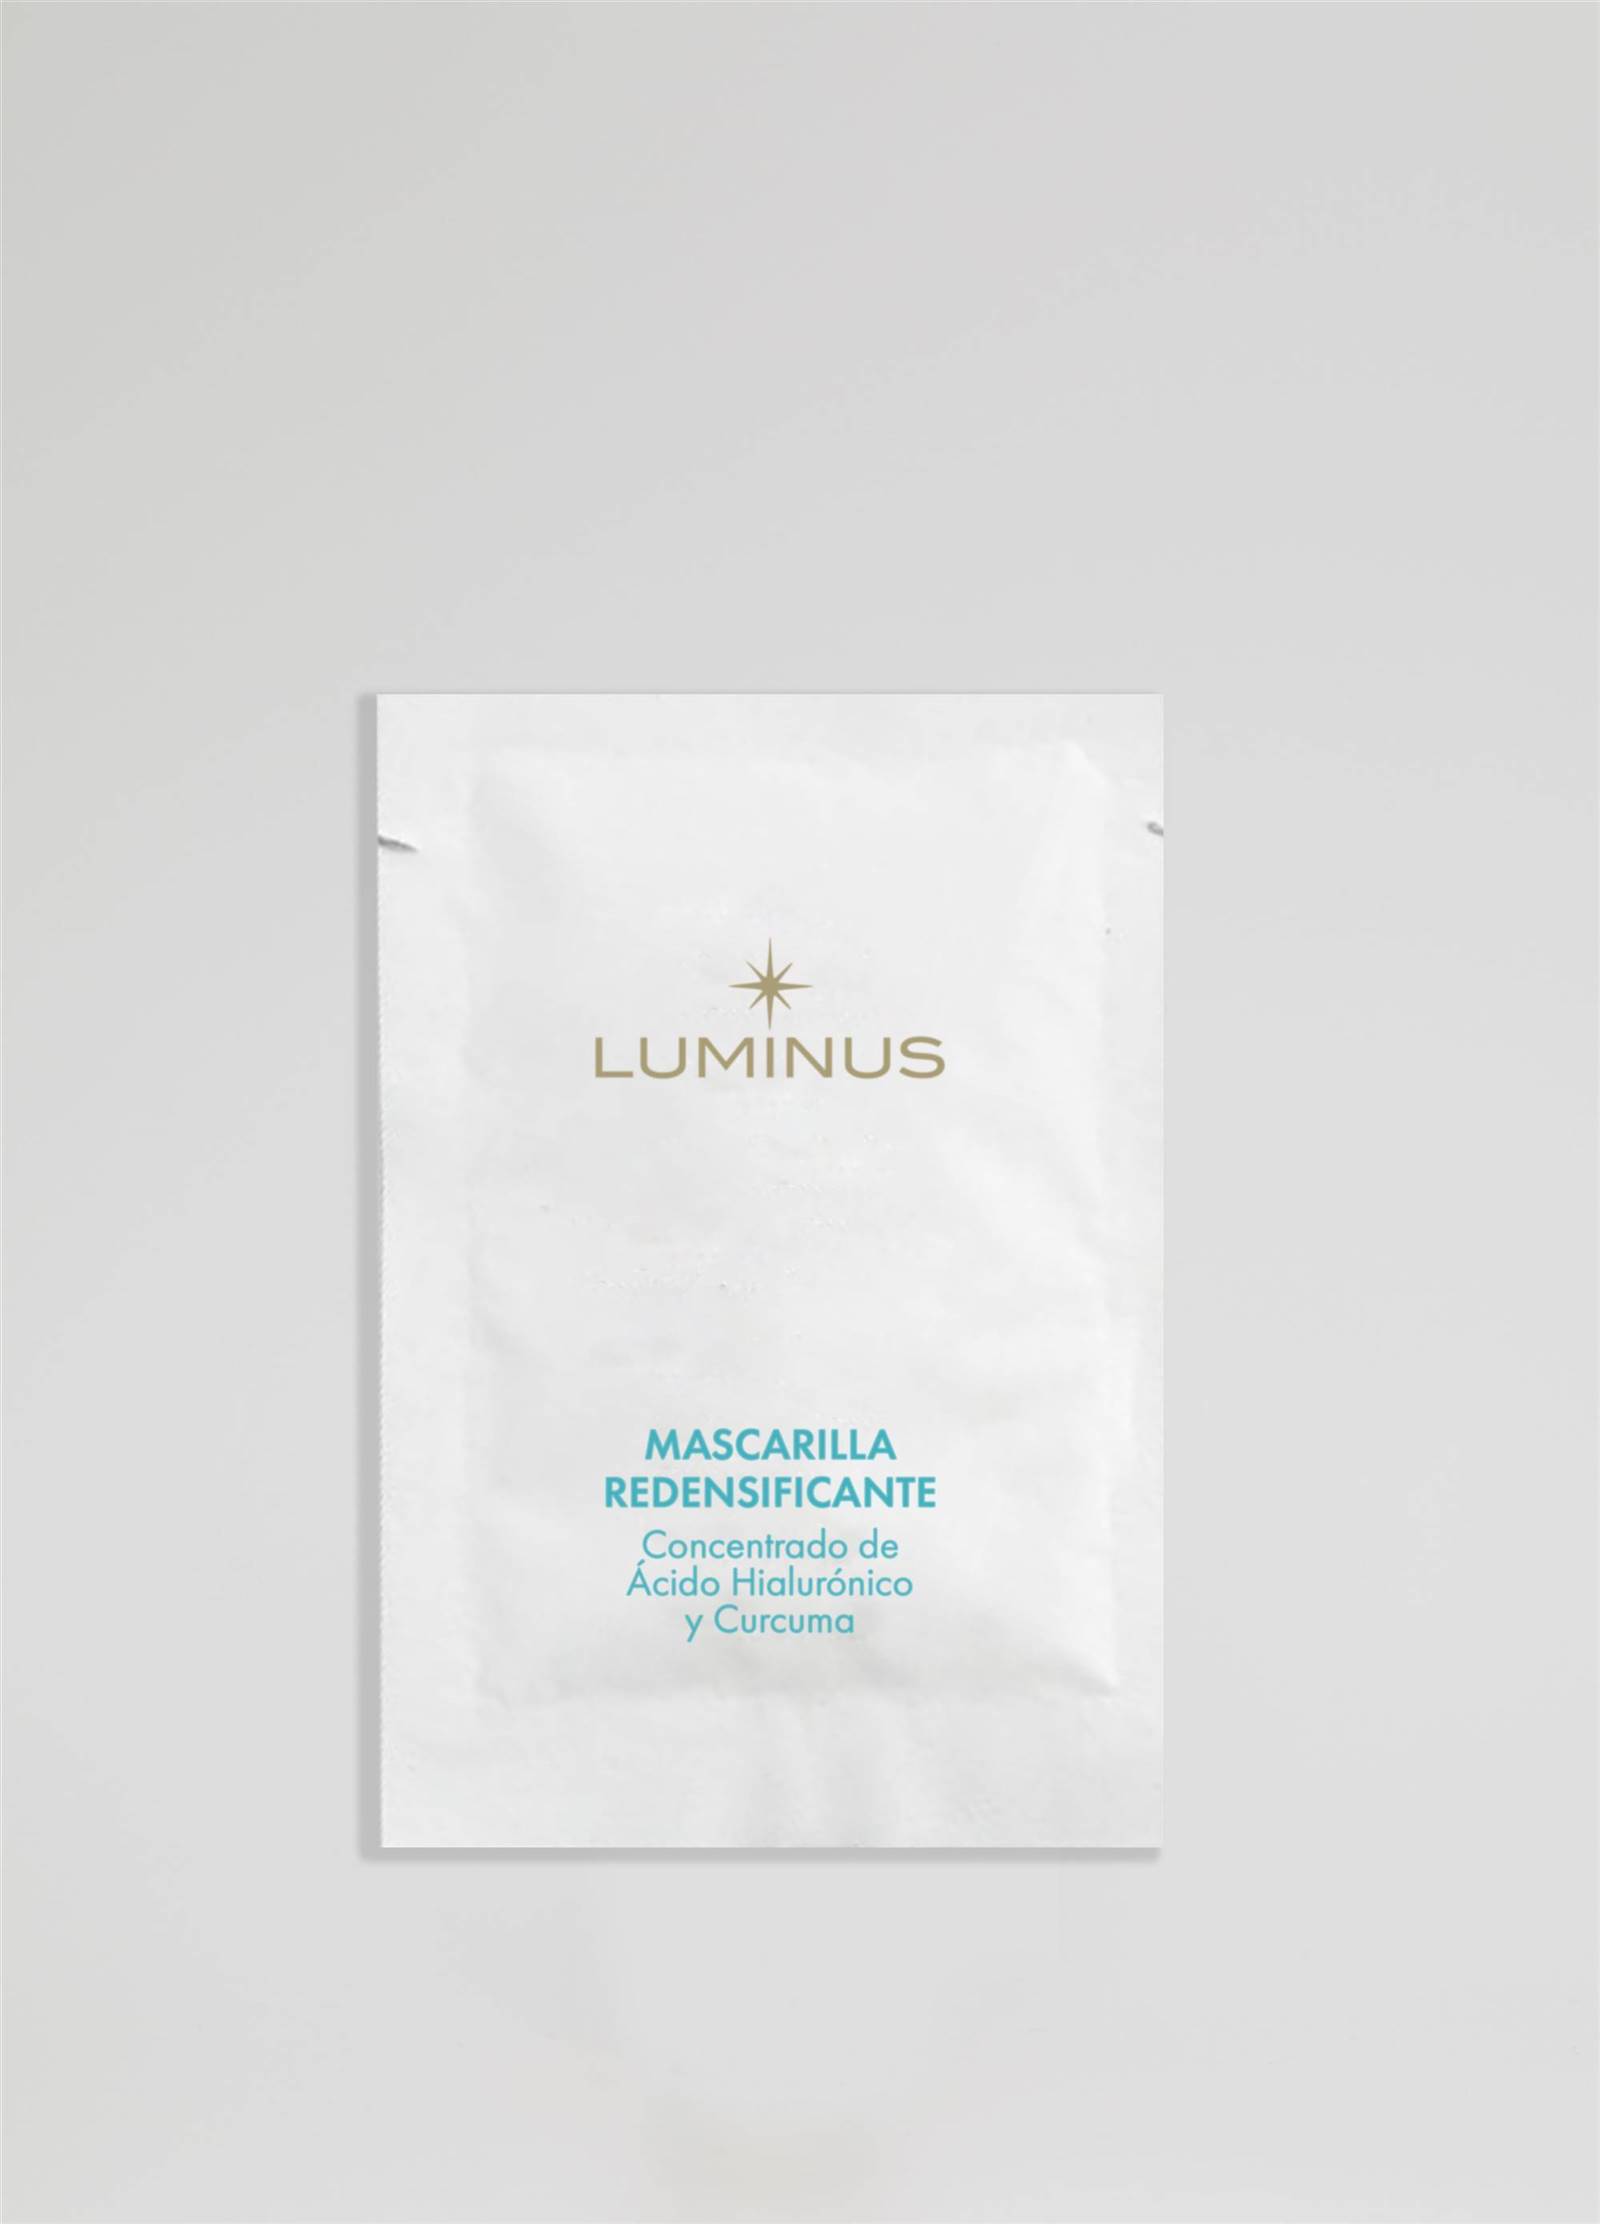 Luminus: Mascarilla redensificante